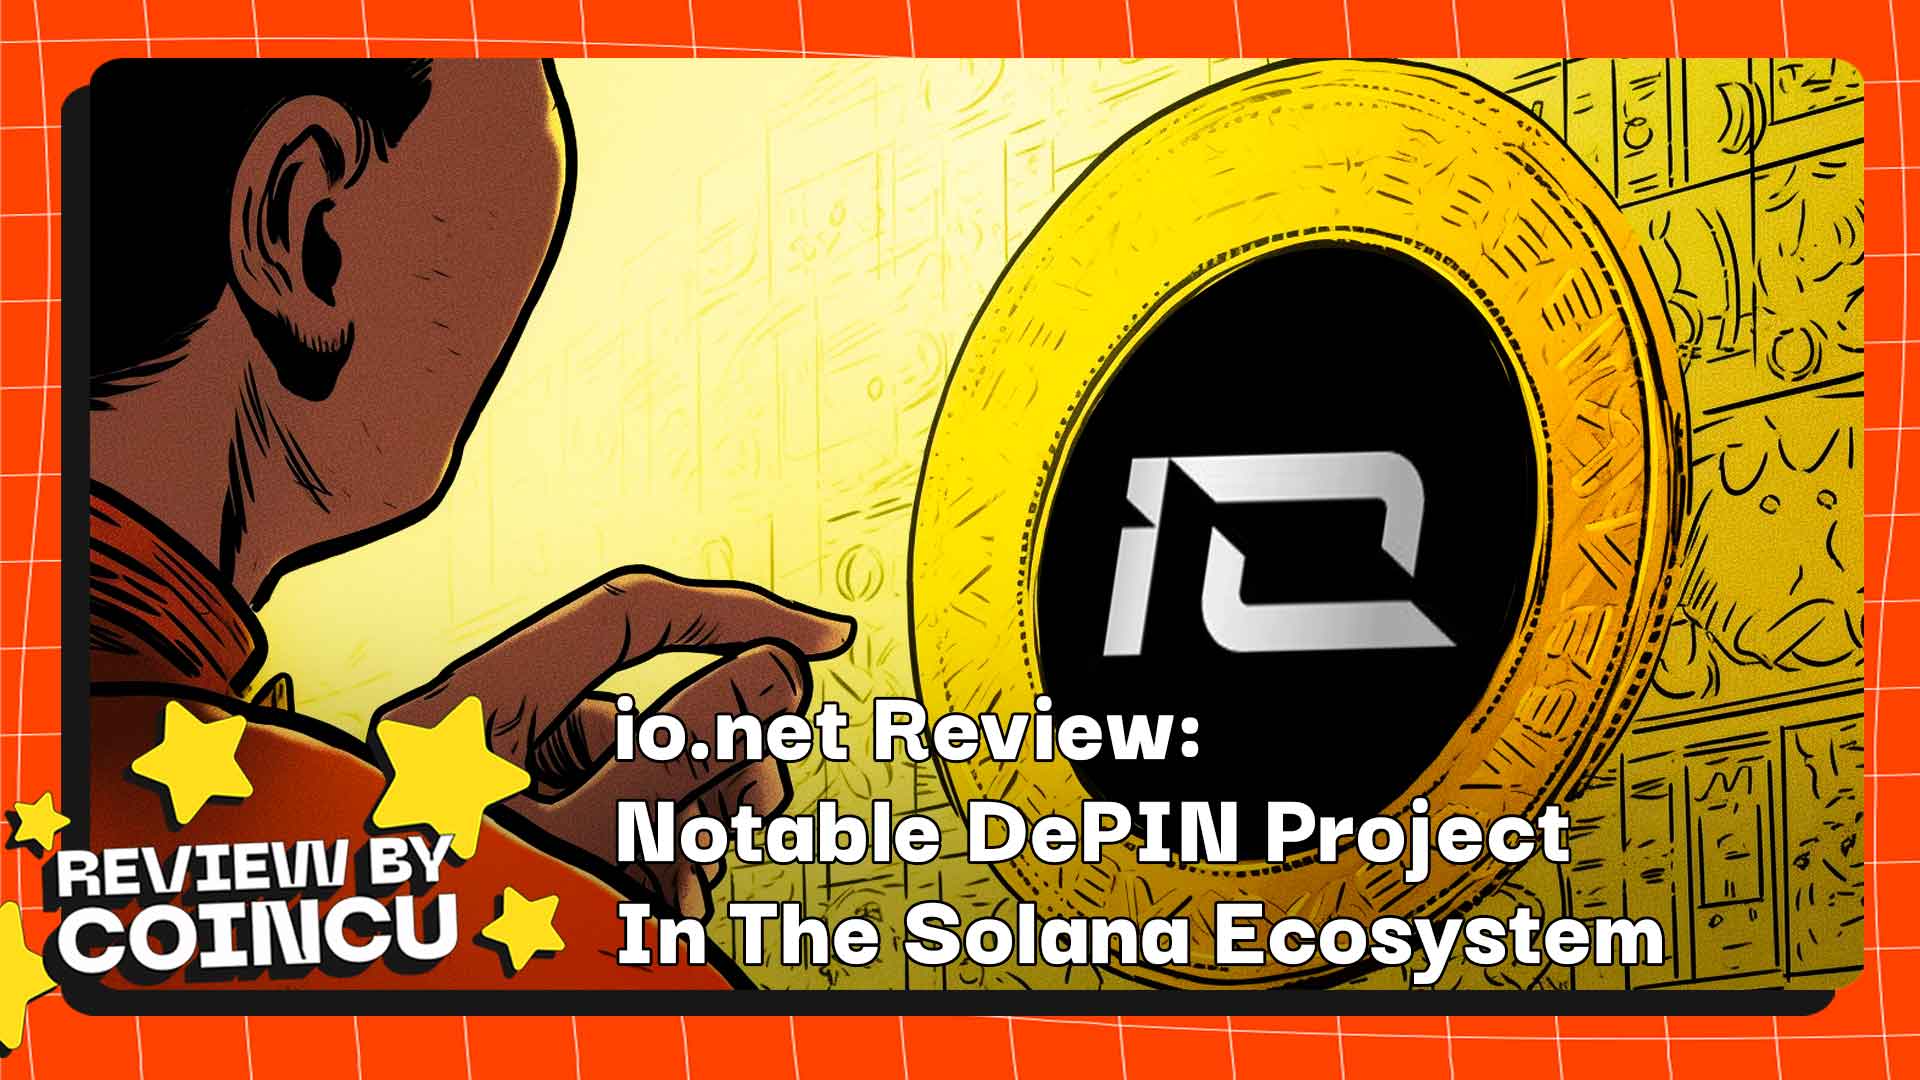 Revisão de io.net: Projeto DePIN notável no ecossistema Solana